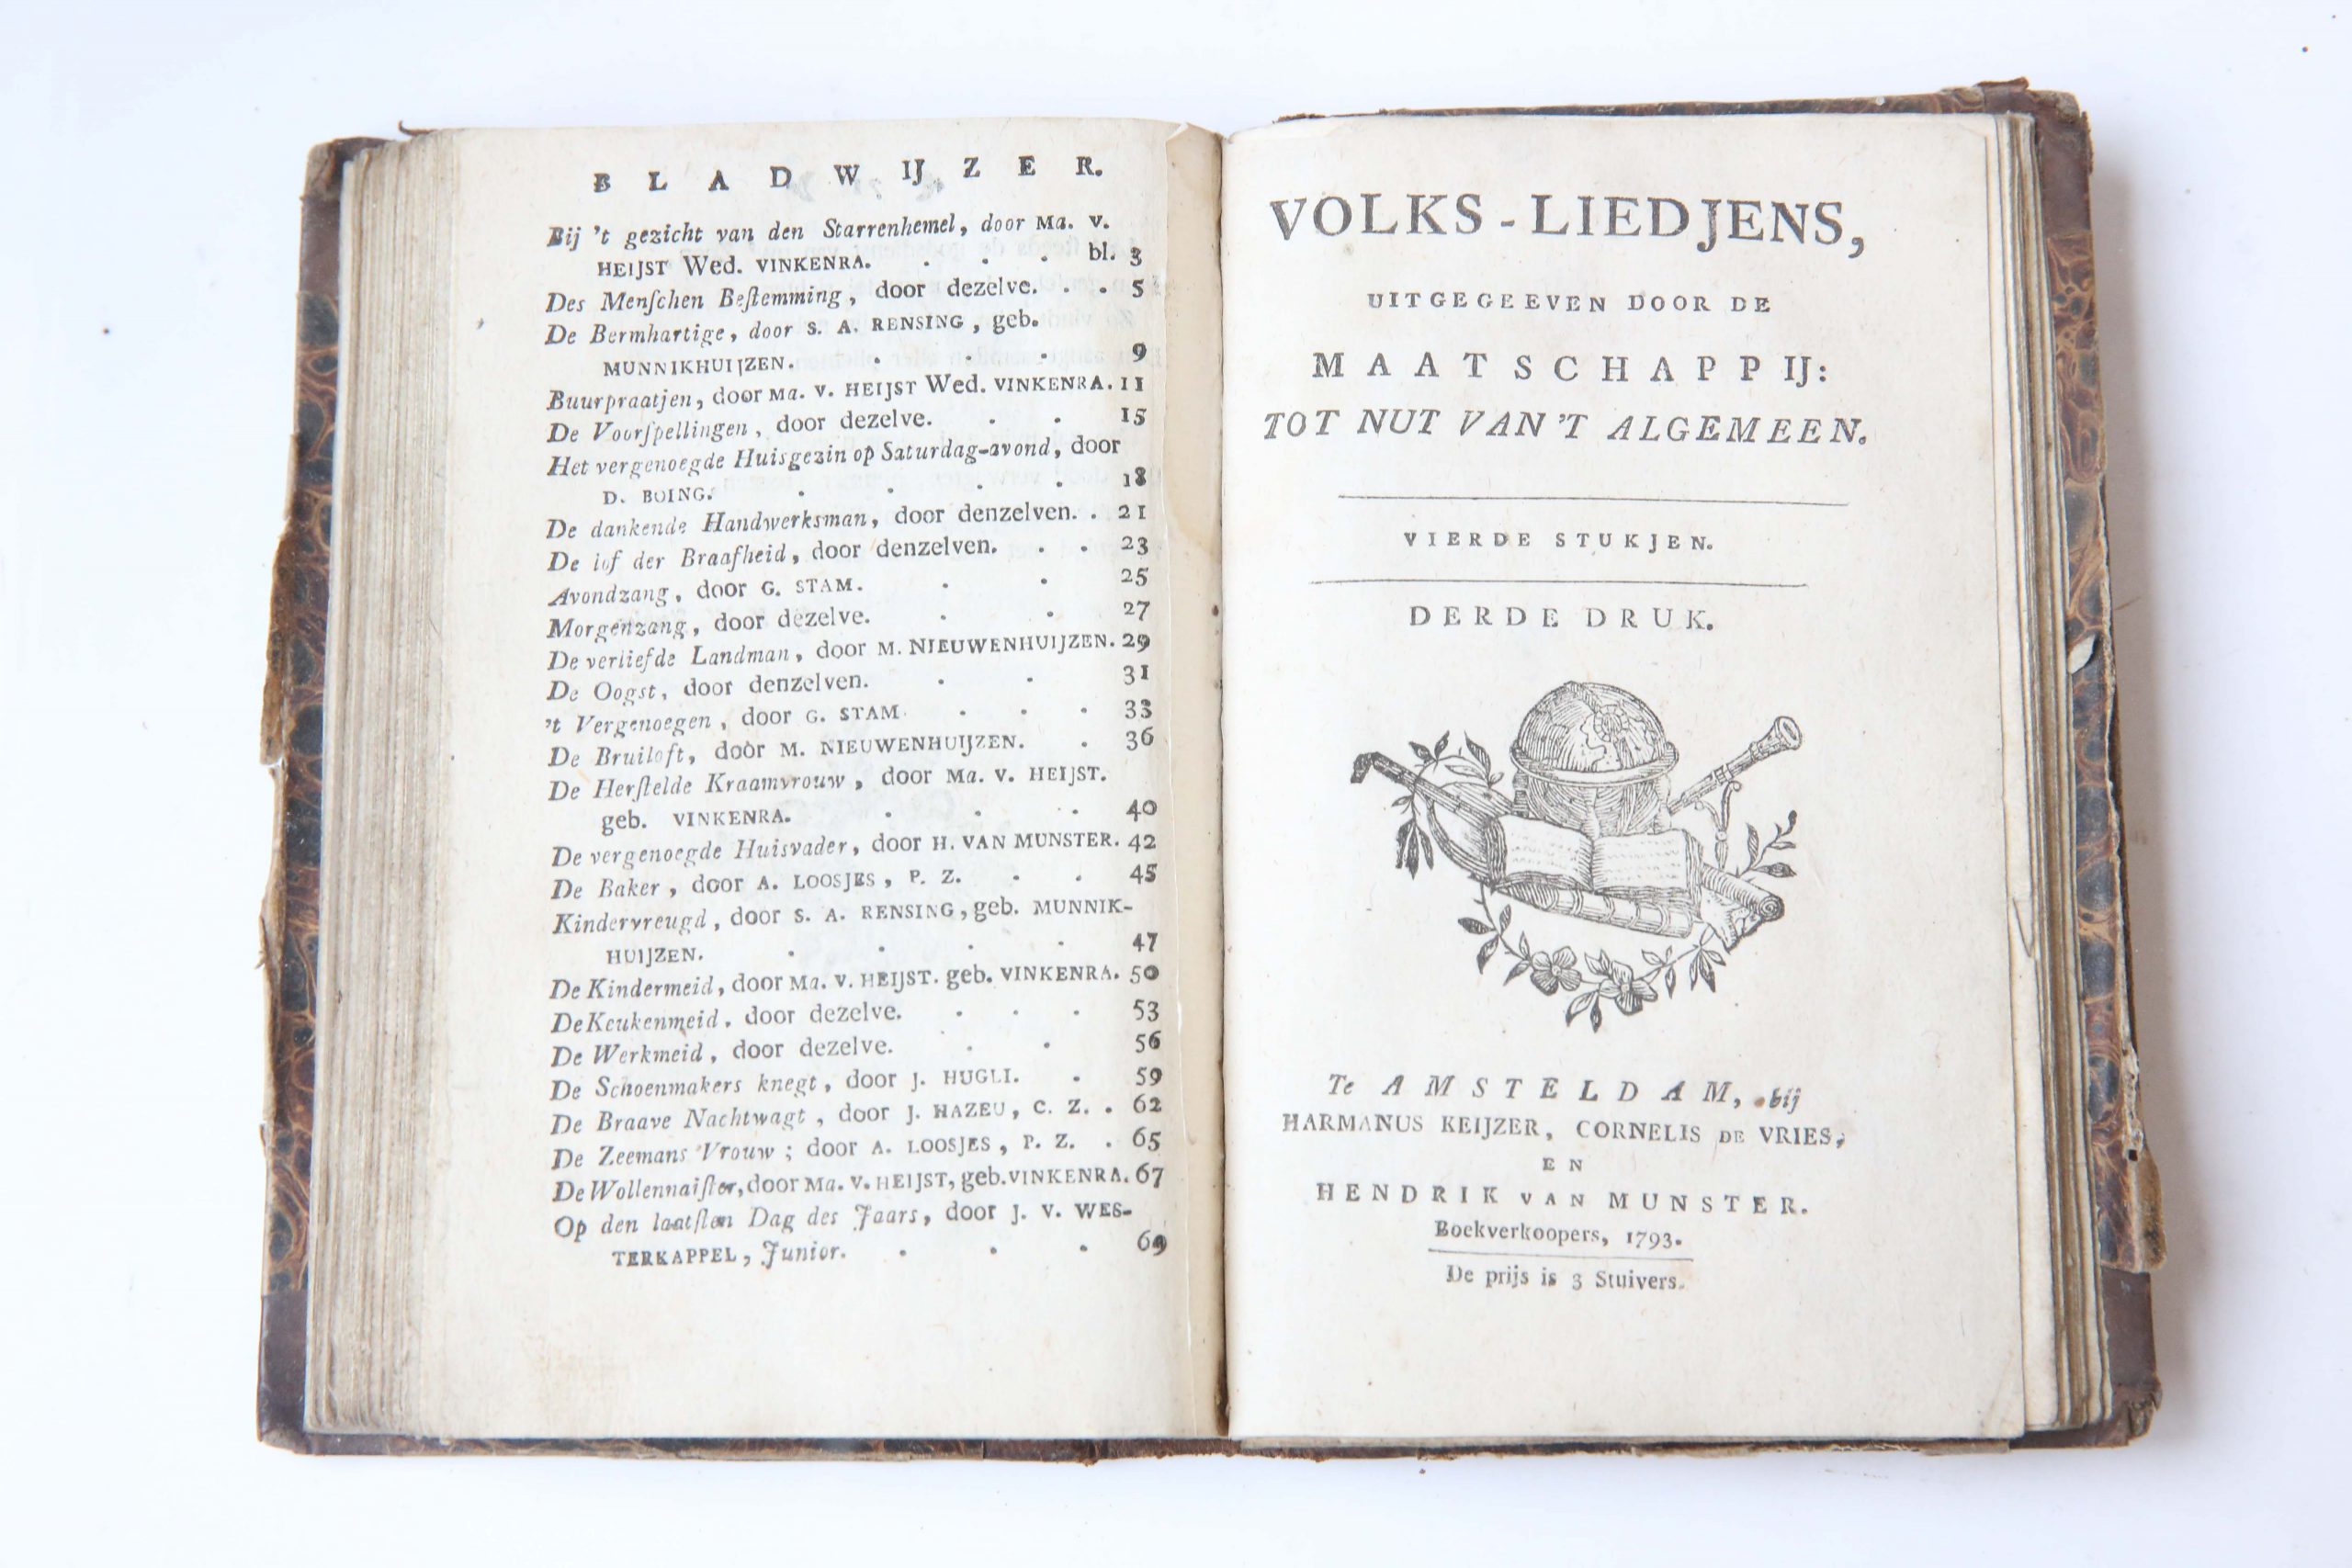  - Volks-liedjens uitgegeeven door de Maatschappij Tot Nut van 't Algemeen, 1e t/m 4e stukje. 7e- resp. 6e-, 6e-, en 3e- druk. Amsterdam, Keijzer, de Vries, van Munster, 1793.